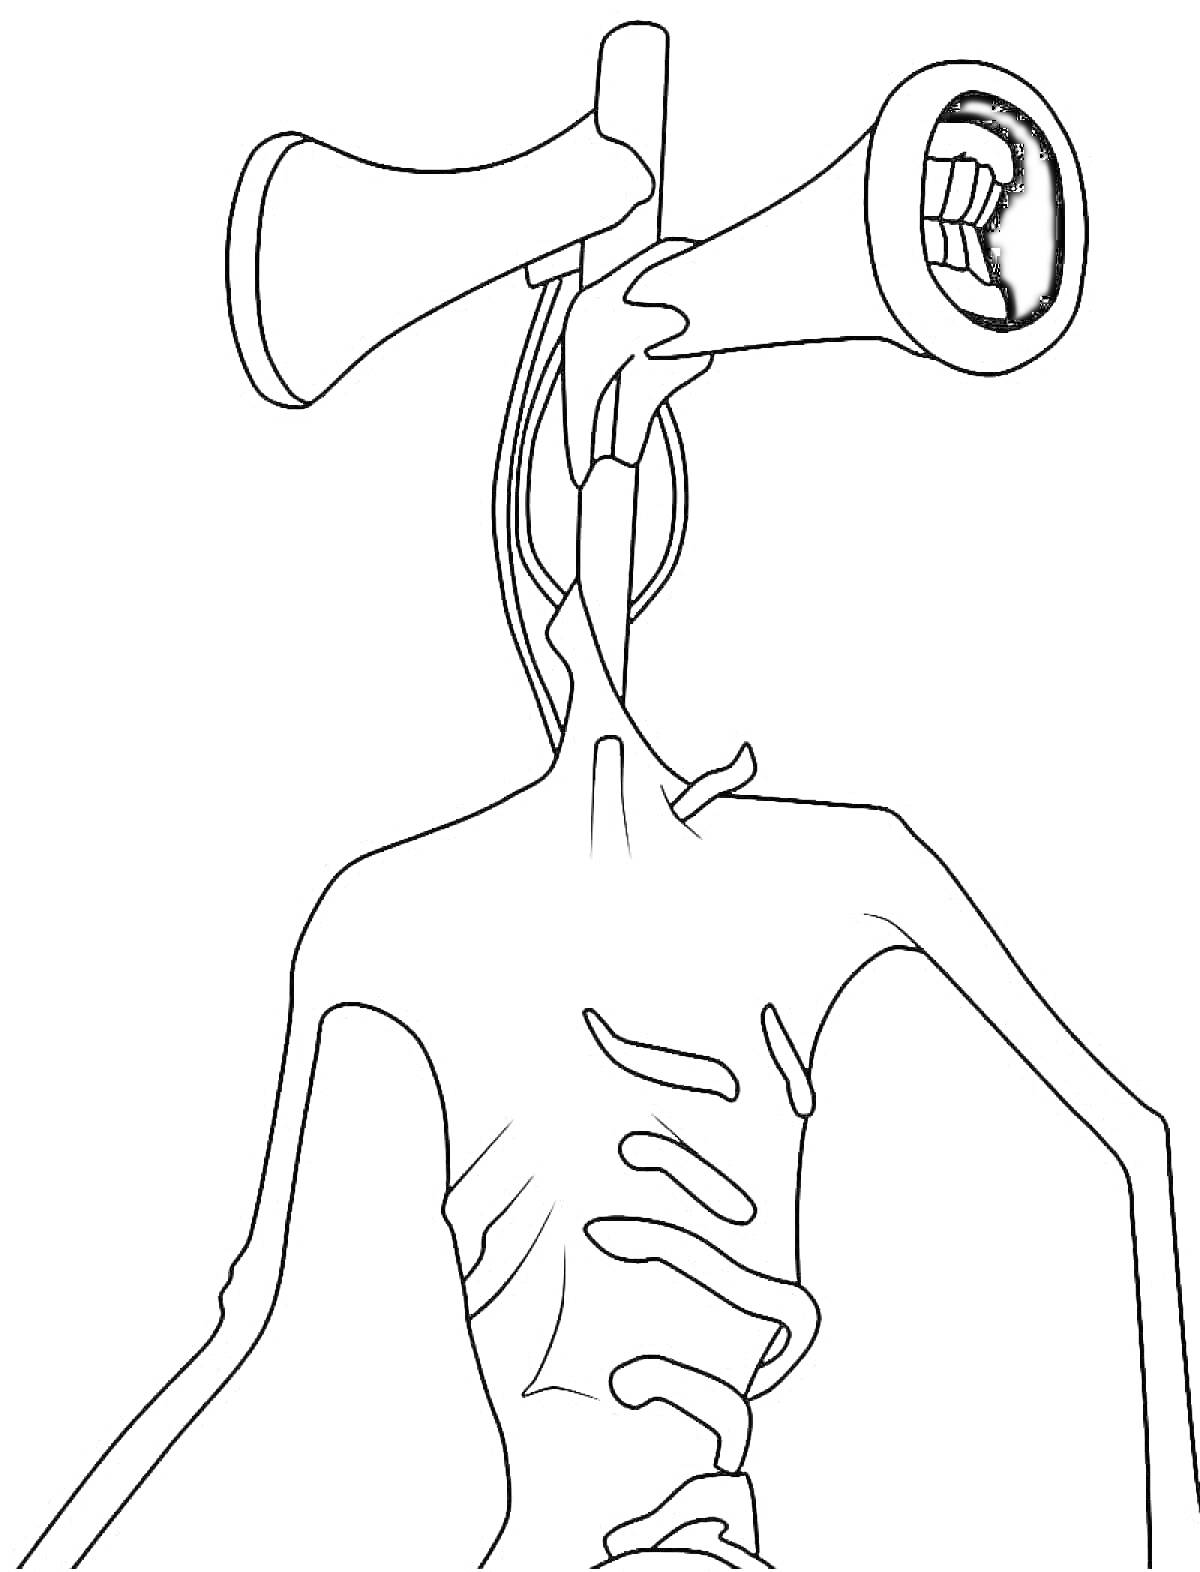 Сиренеголовый с двумя сиренами вместо головы, с открытыми ртами, обнаженное ребристое тело